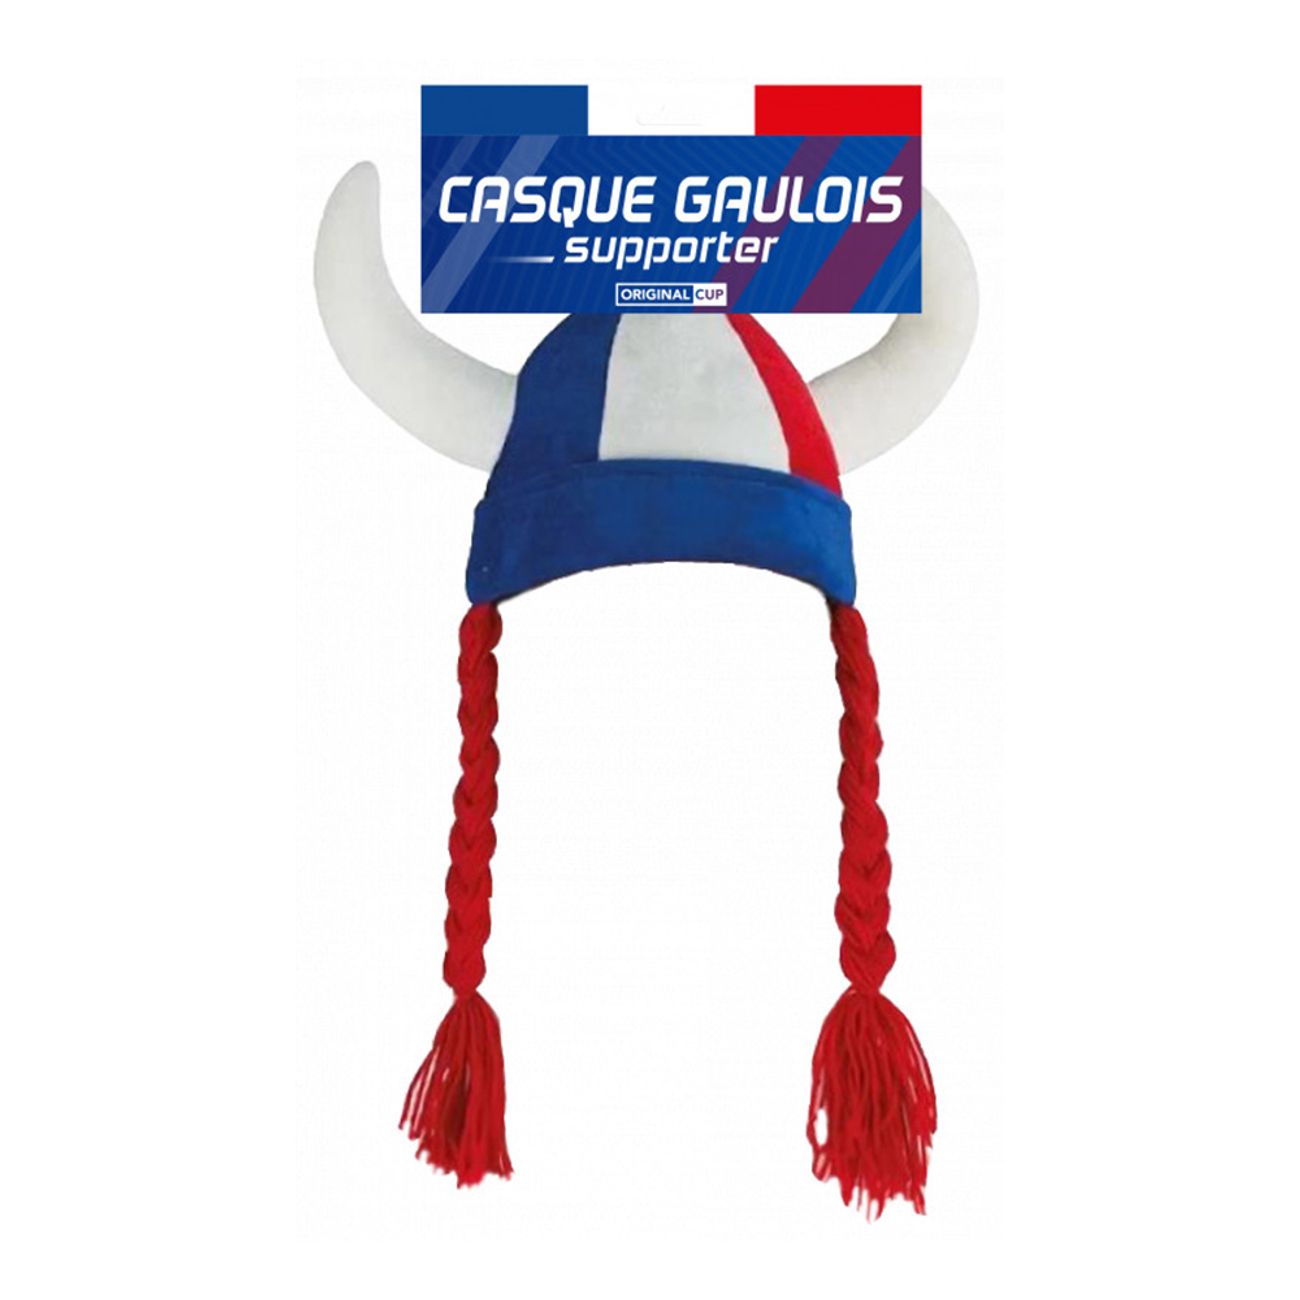 casque-gaulois-supporter-hatt-75594-1